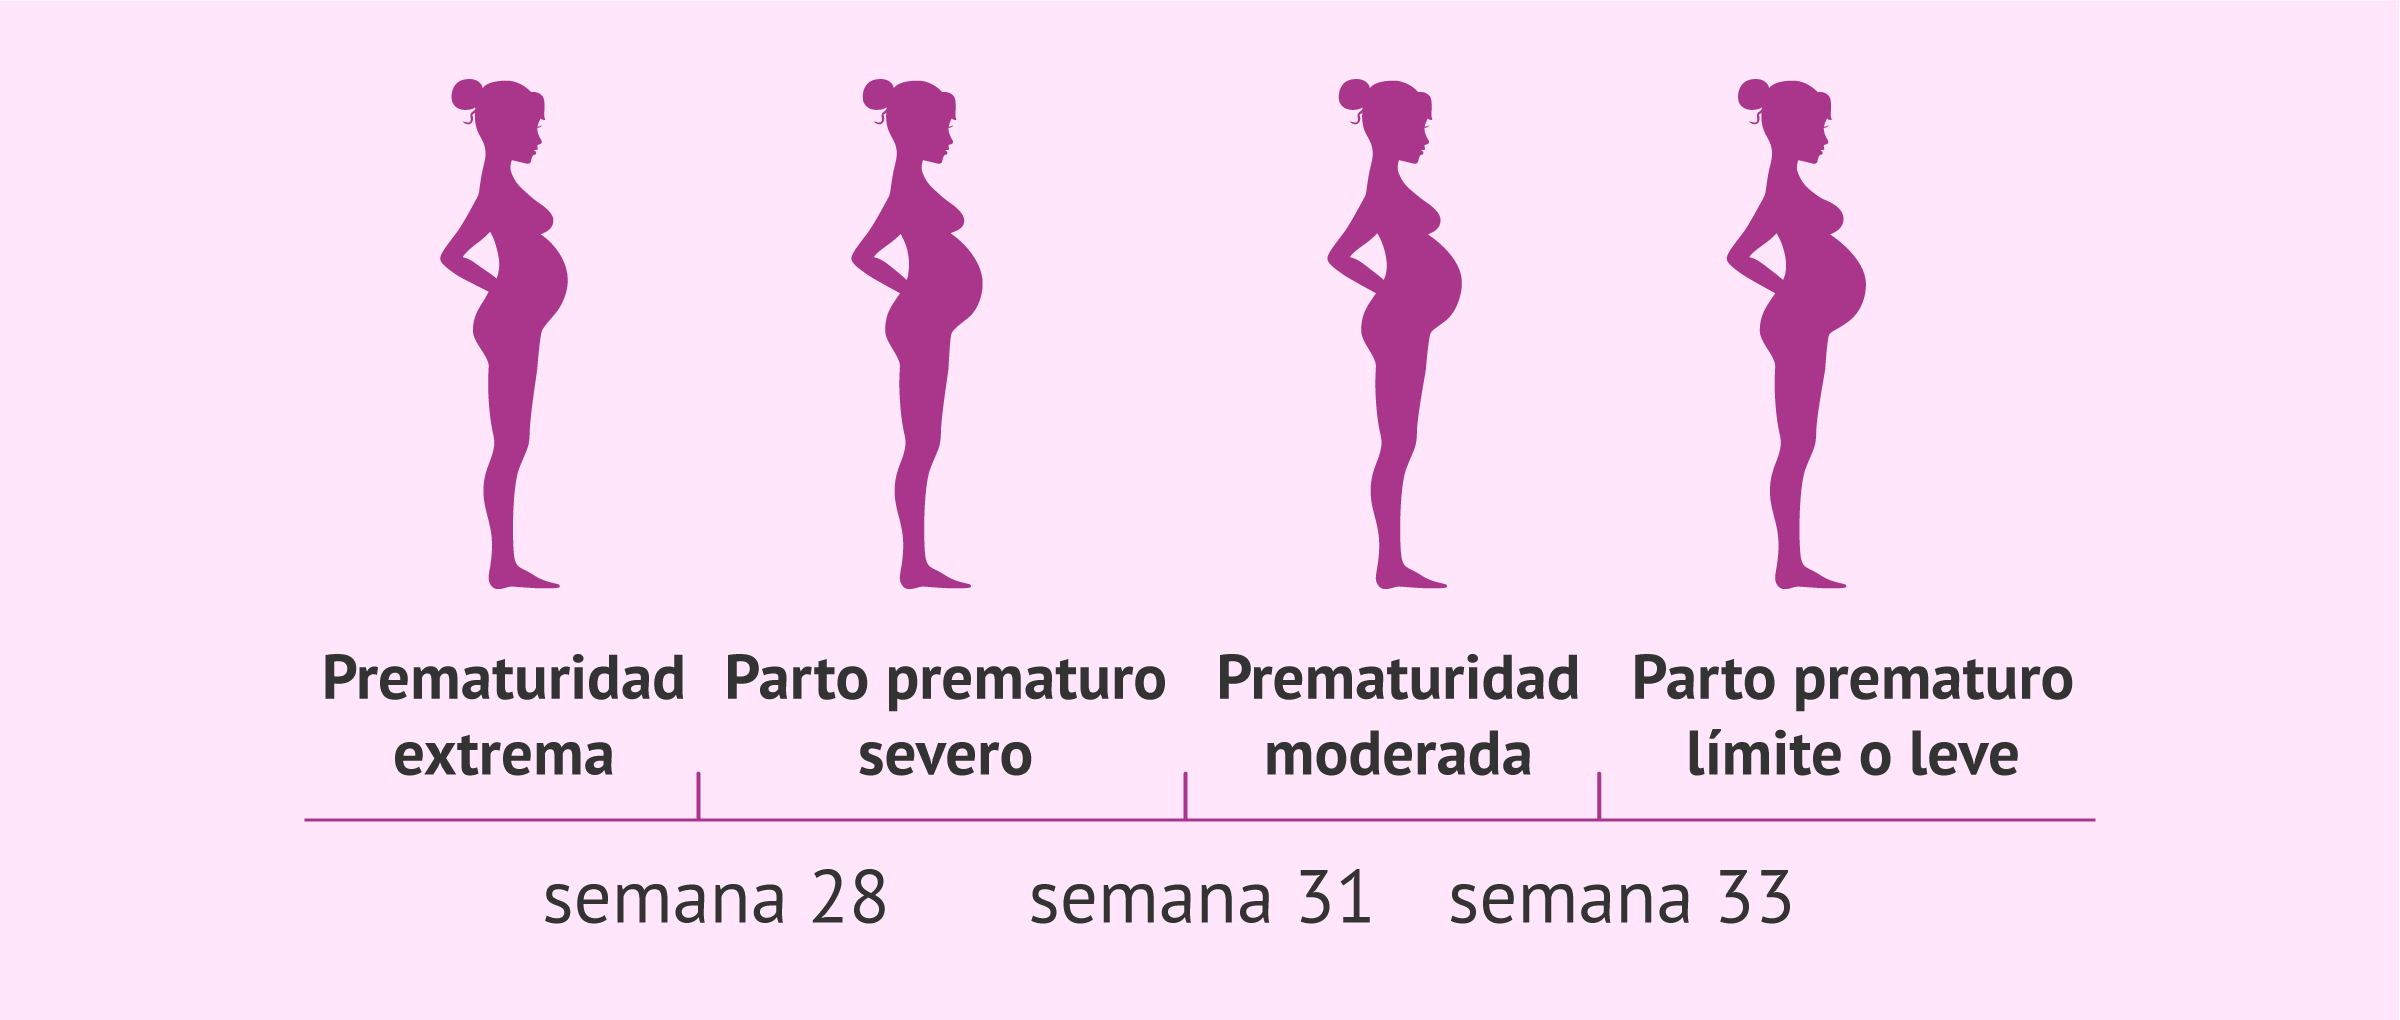 Semana 32 de embarazo y parto prematuro